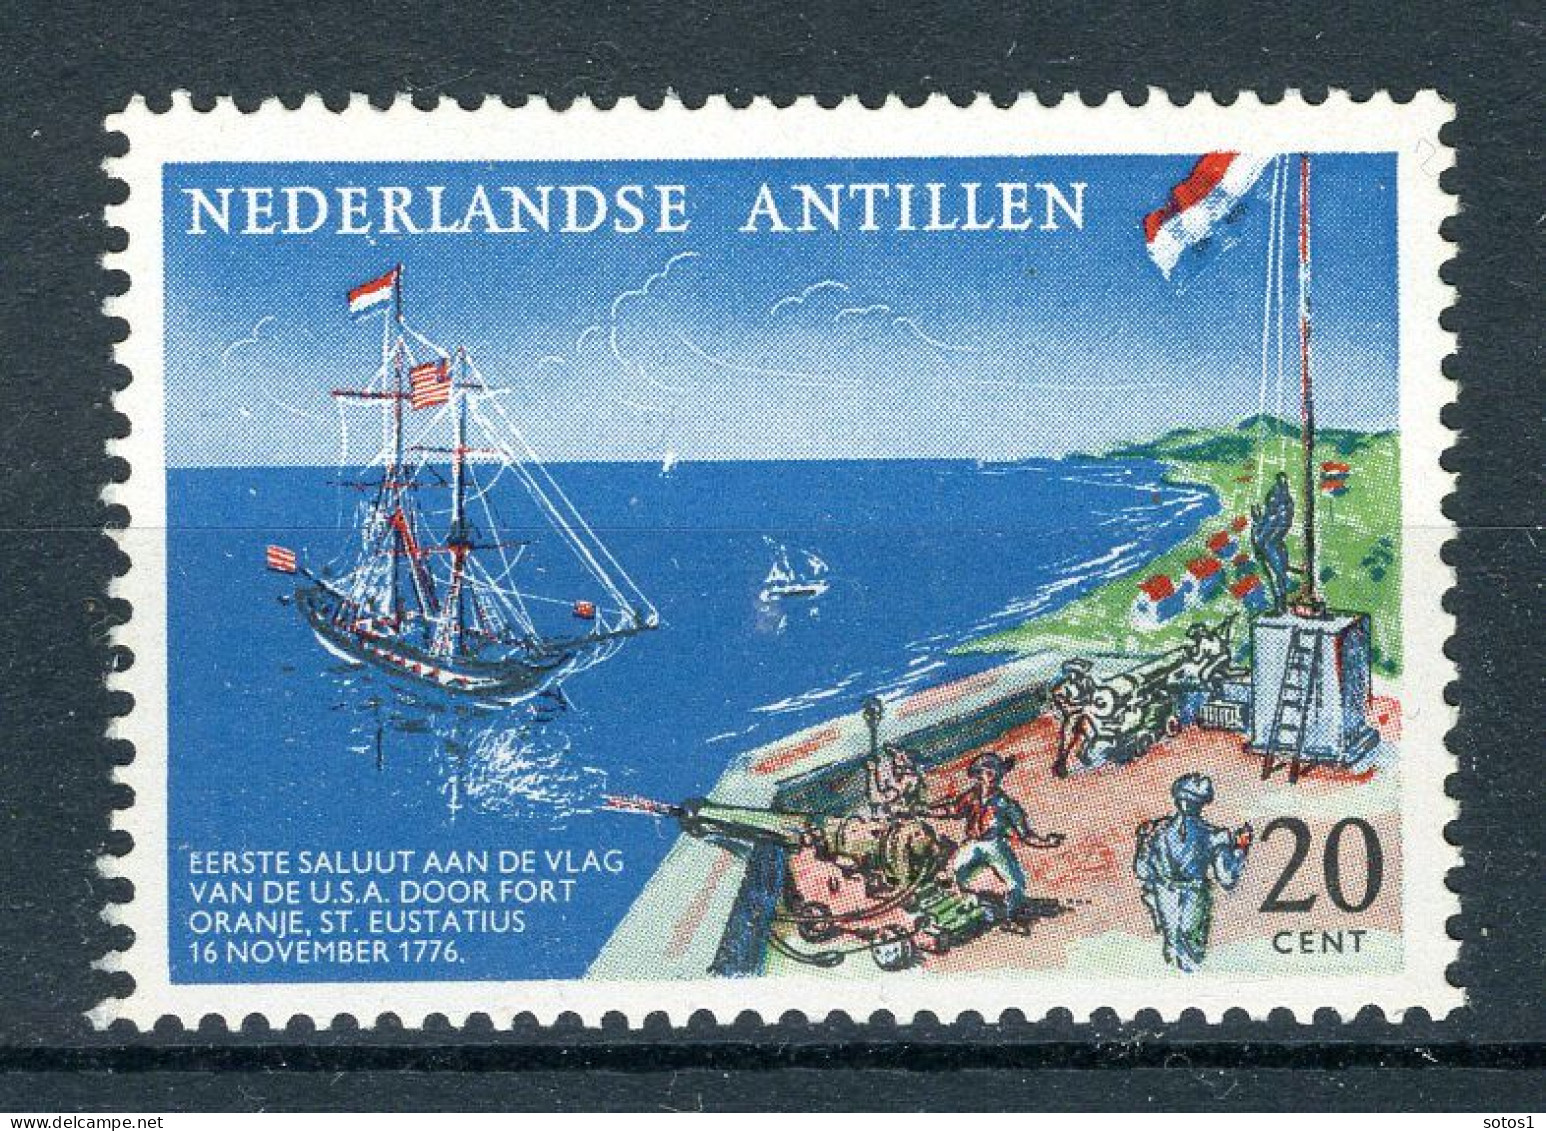 NL. ANTILLEN 322 MNH 1961 - Herdenkingszegel. - Curaçao, Antilles Neérlandaises, Aruba